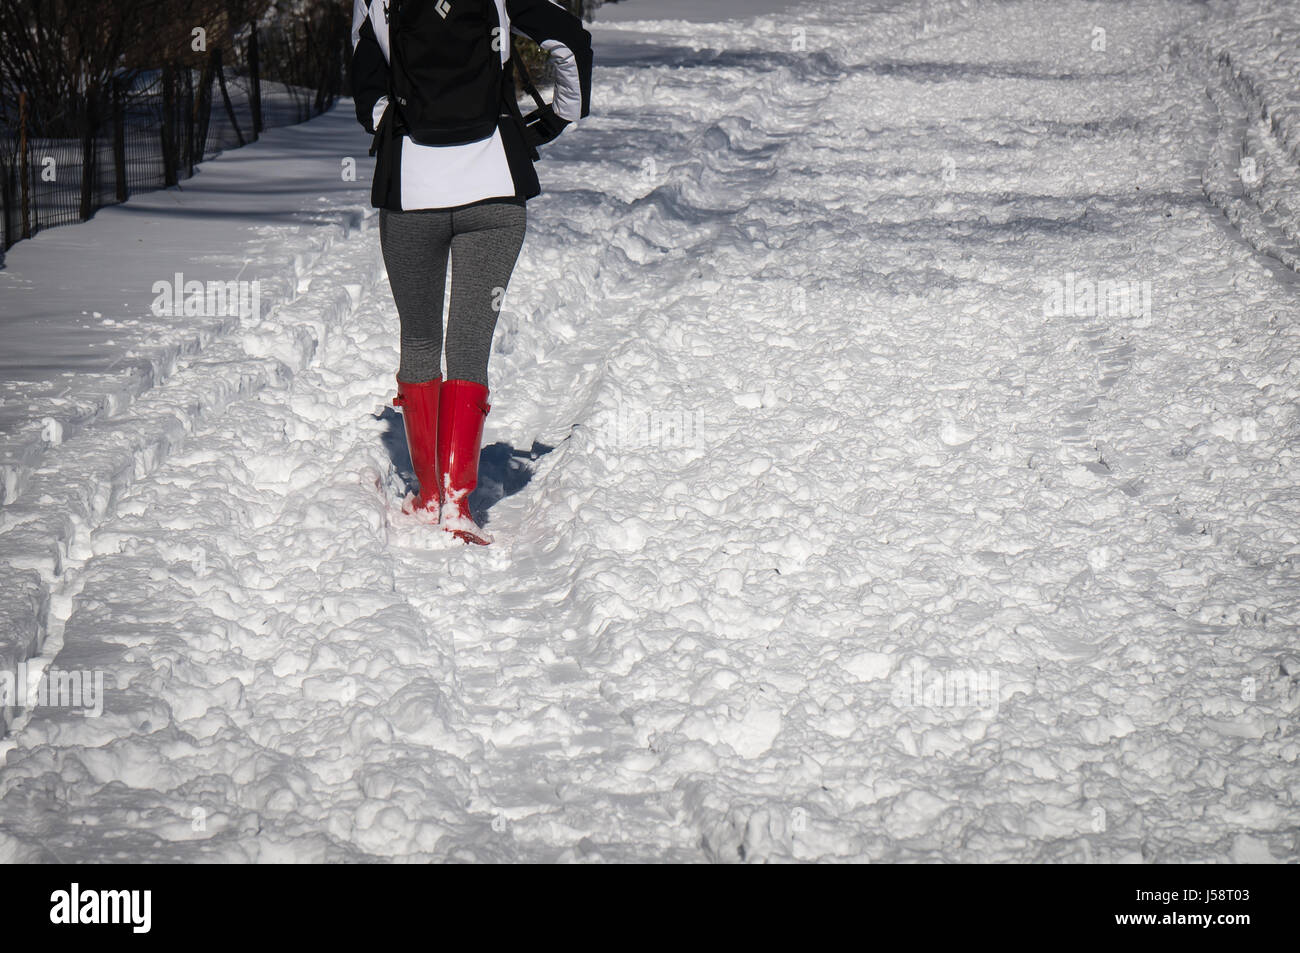 Mädchen mit roten Gummistiefel Wandern im Schnee Stockfotografie - Alamy